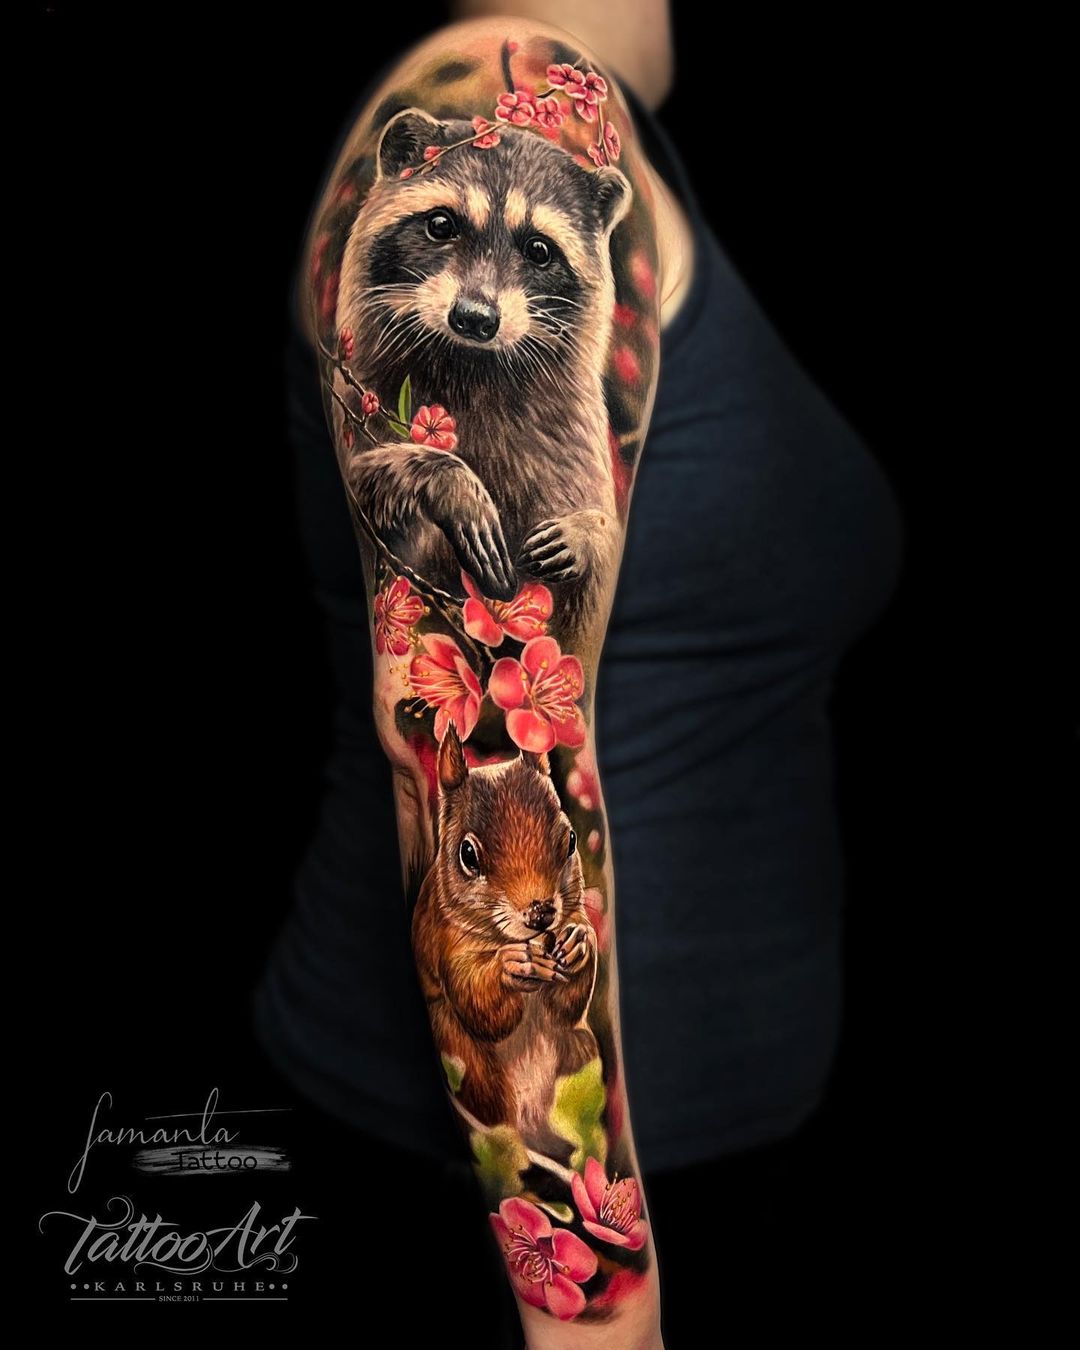 Amazing squirrel tattoo by samanta tattoo